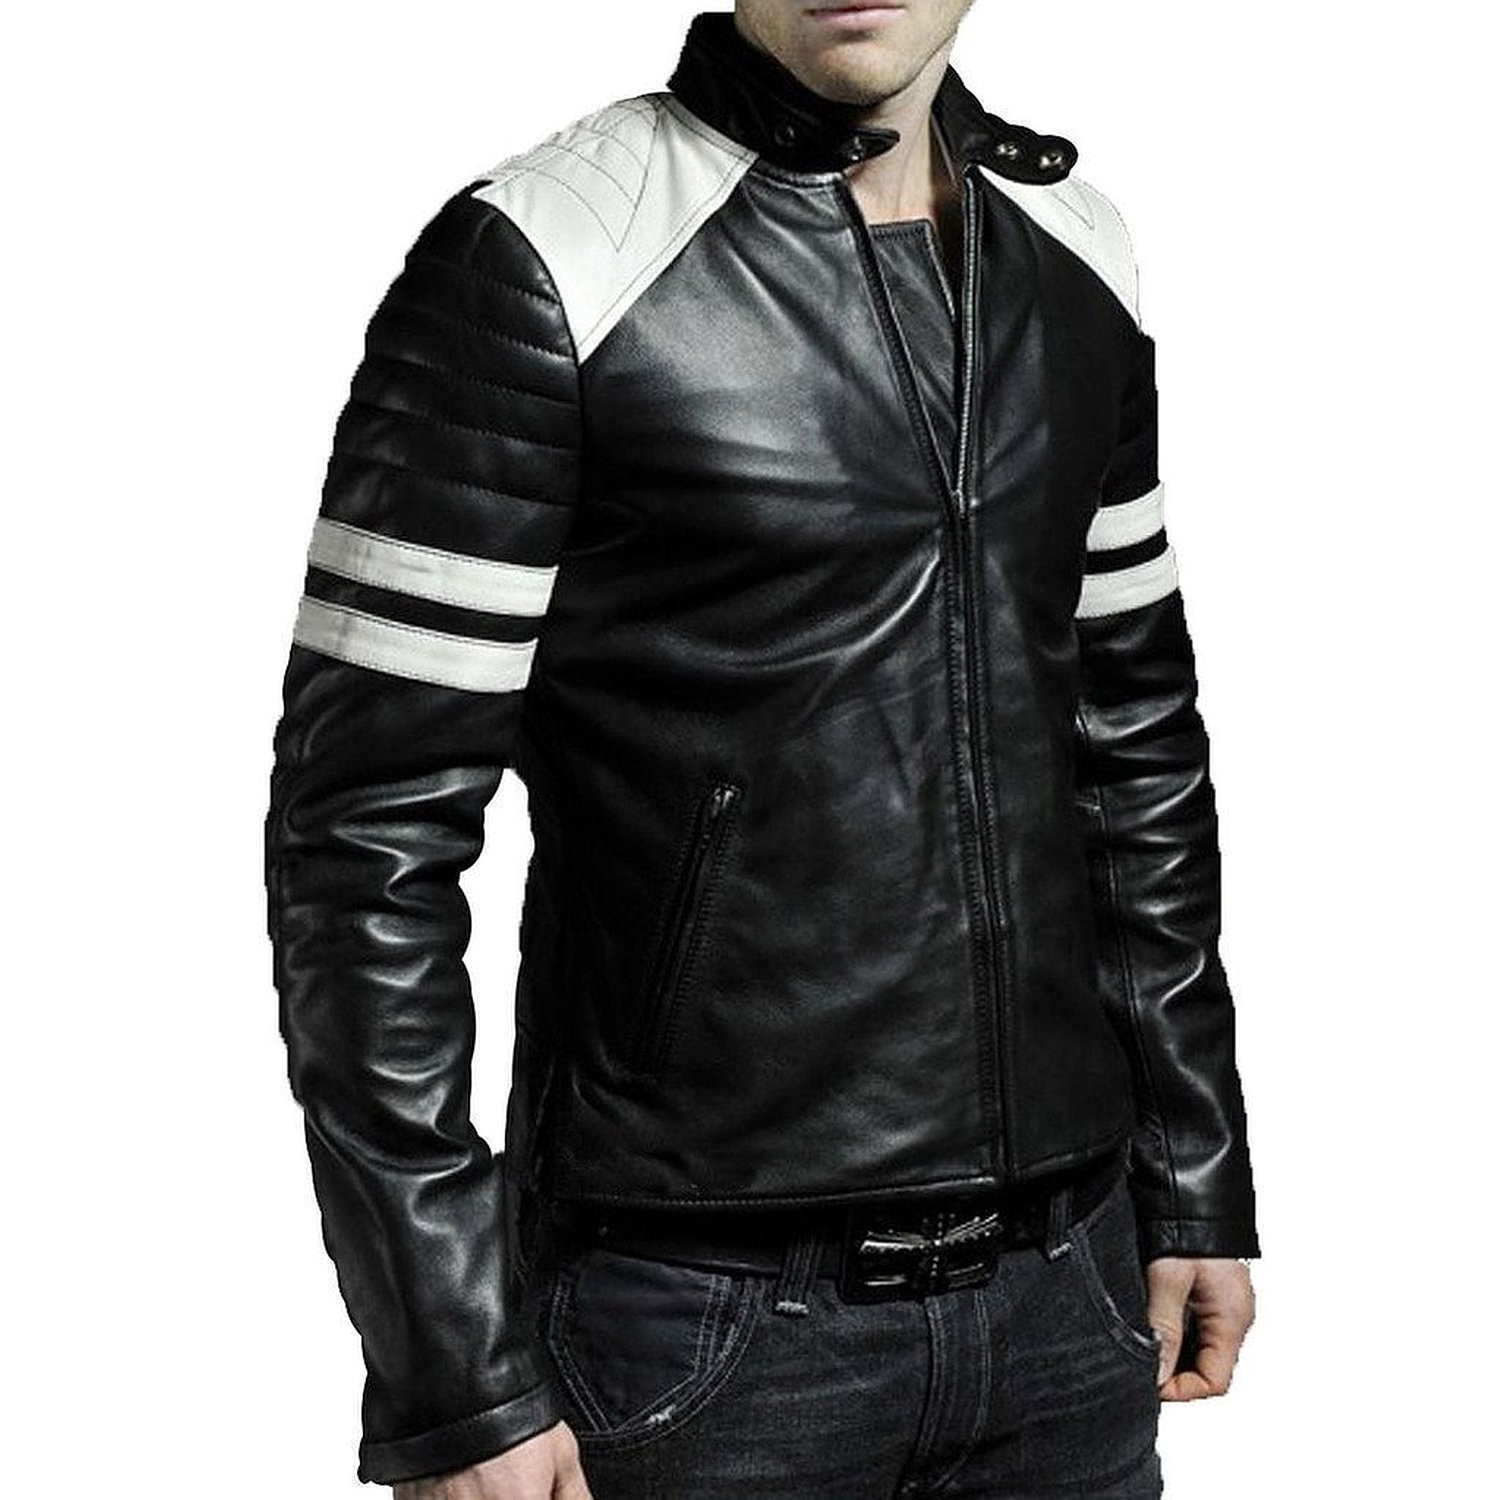 Купить мужскую кожаную куртку в нижнем новгороде. Black Leather Jacket Tween мужская. Ламбскин Леатер. Кожаная мужская куртка бас Рубис. Куртка David Outwear Salvador Leather Jacket.